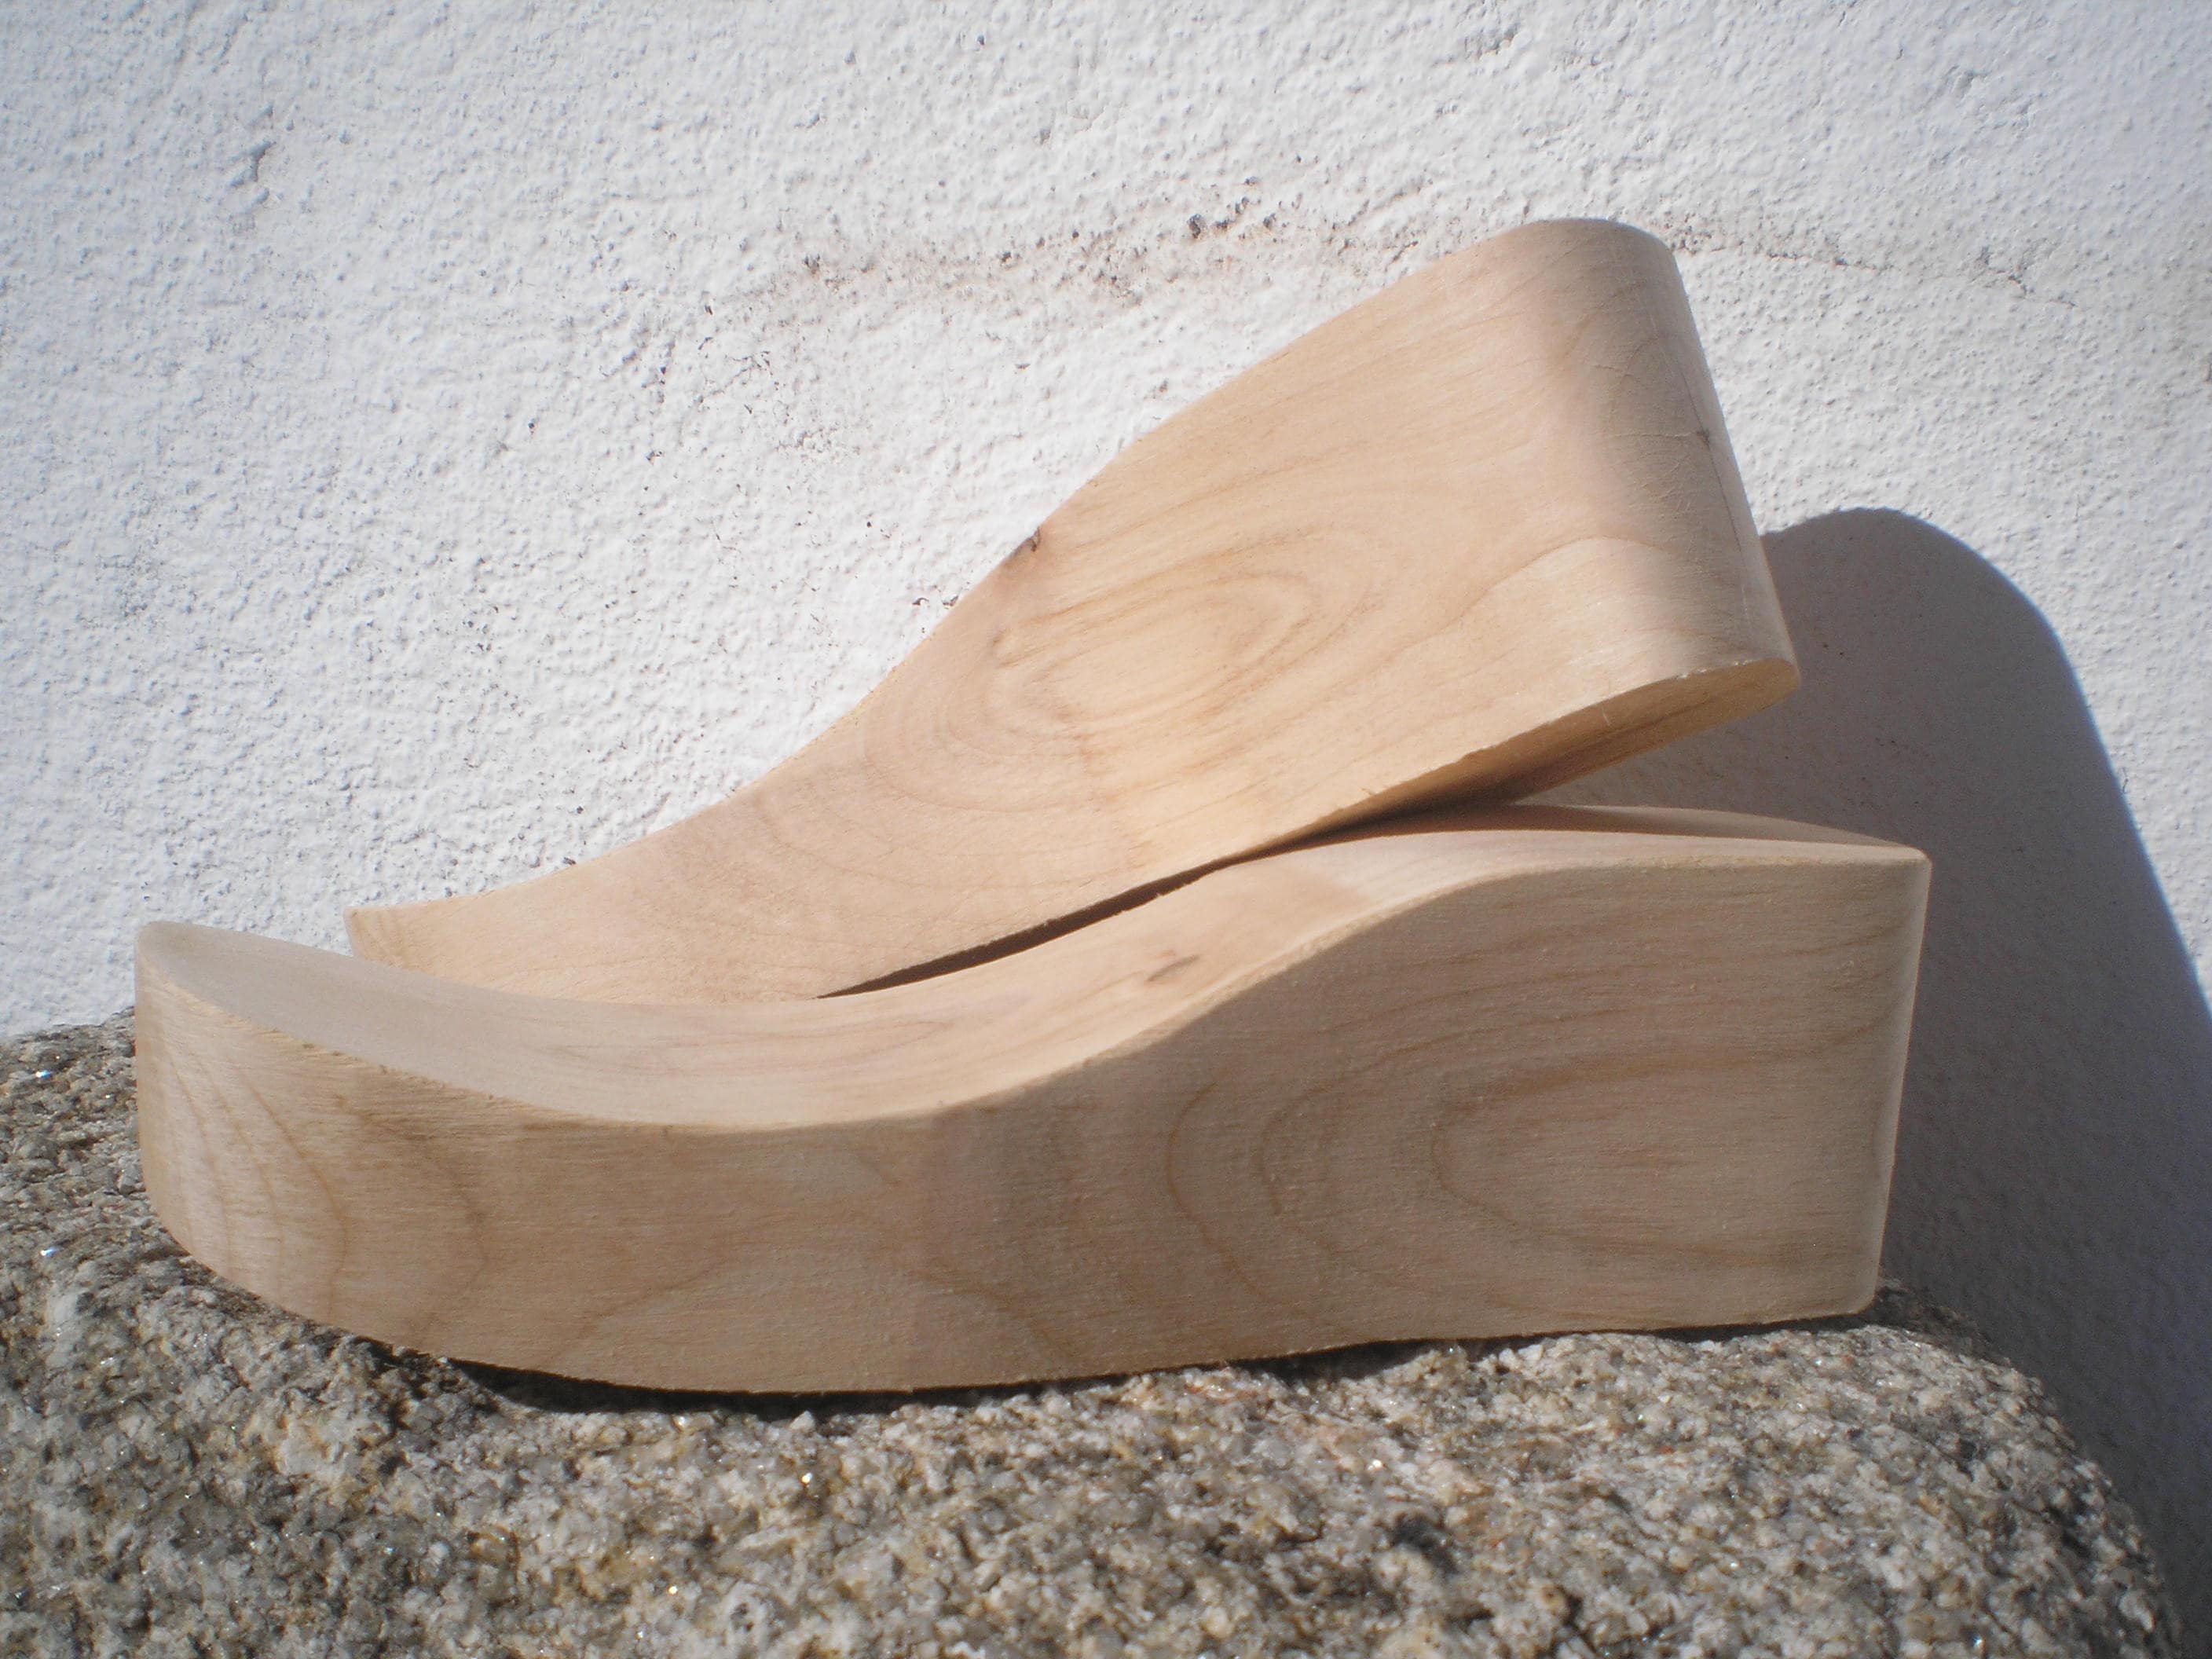 Подошвы деревьев. Деревянная подошва. Обувь на деревянной подошве. Саба на деревянной подошве. Босоножки на деревянной подошве.